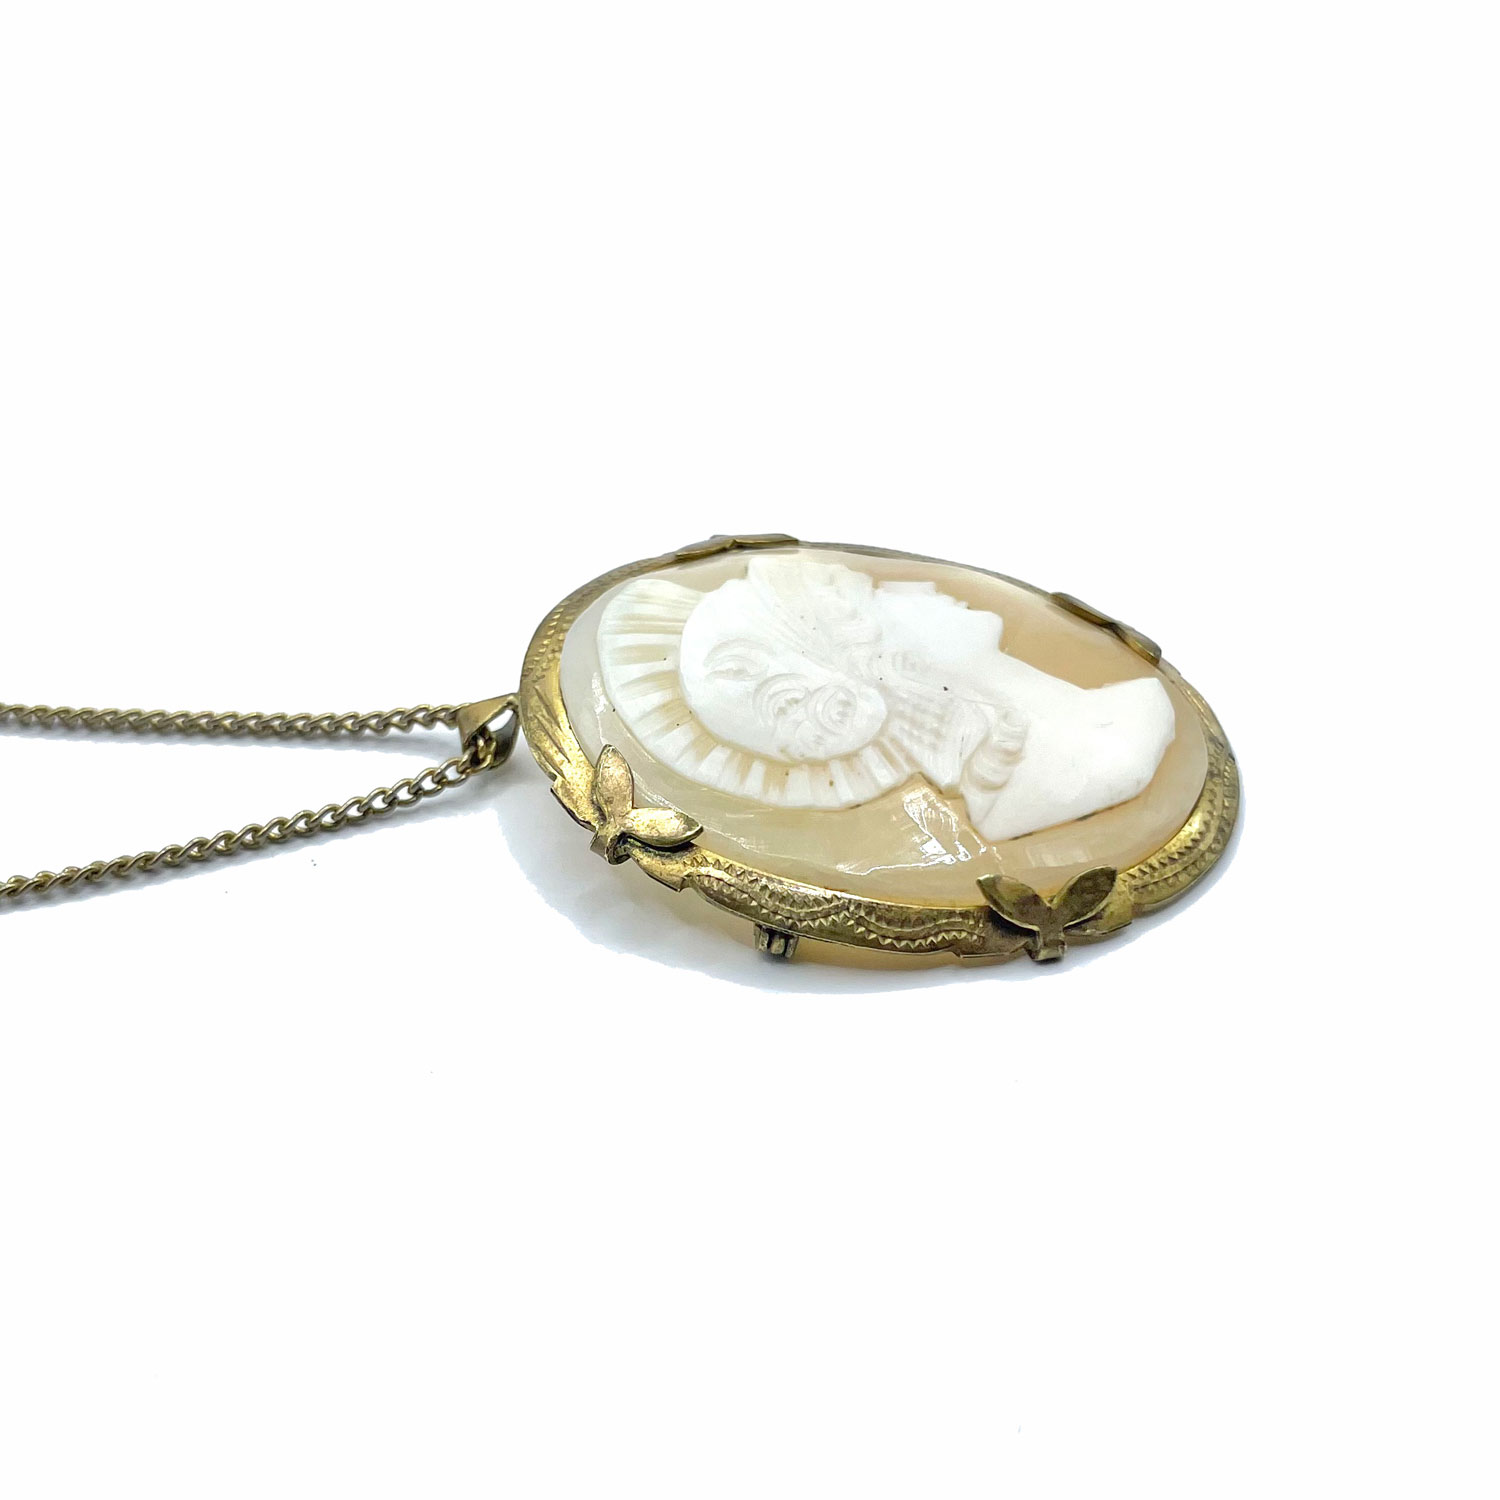 Vintage cameo brooch pendant necklace